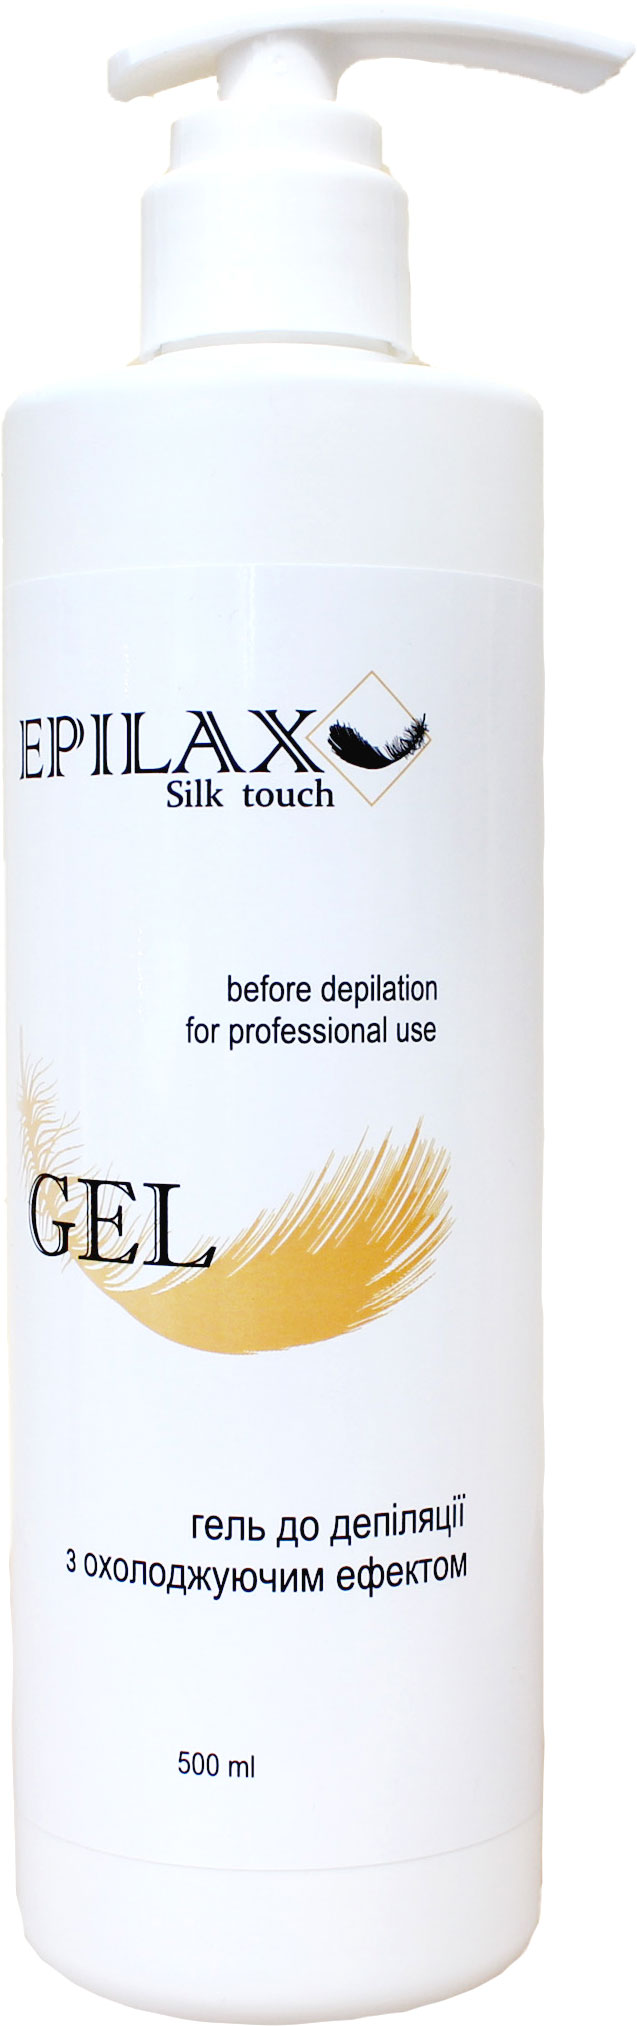 Акция на Гель до депиляции Epilax Silk Touch с охлаждающим эффектом 500 мл (4820251920515) от Rozetka UA